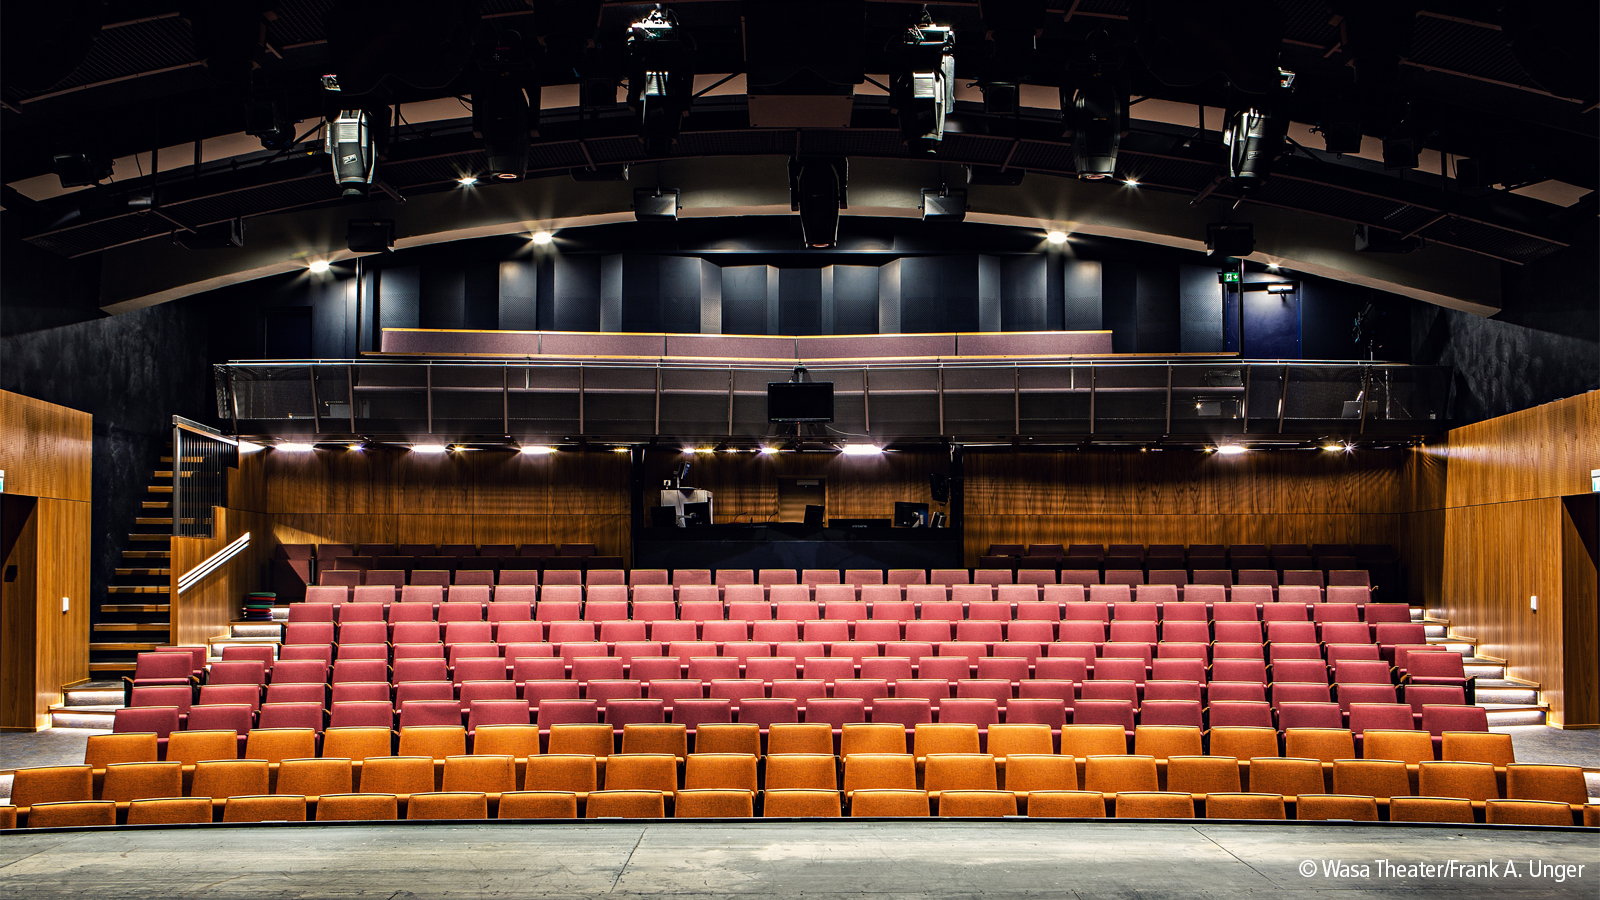 这座名为瓦萨剧院的小型地方剧院配备了最先进的照明和音频控制系统。 